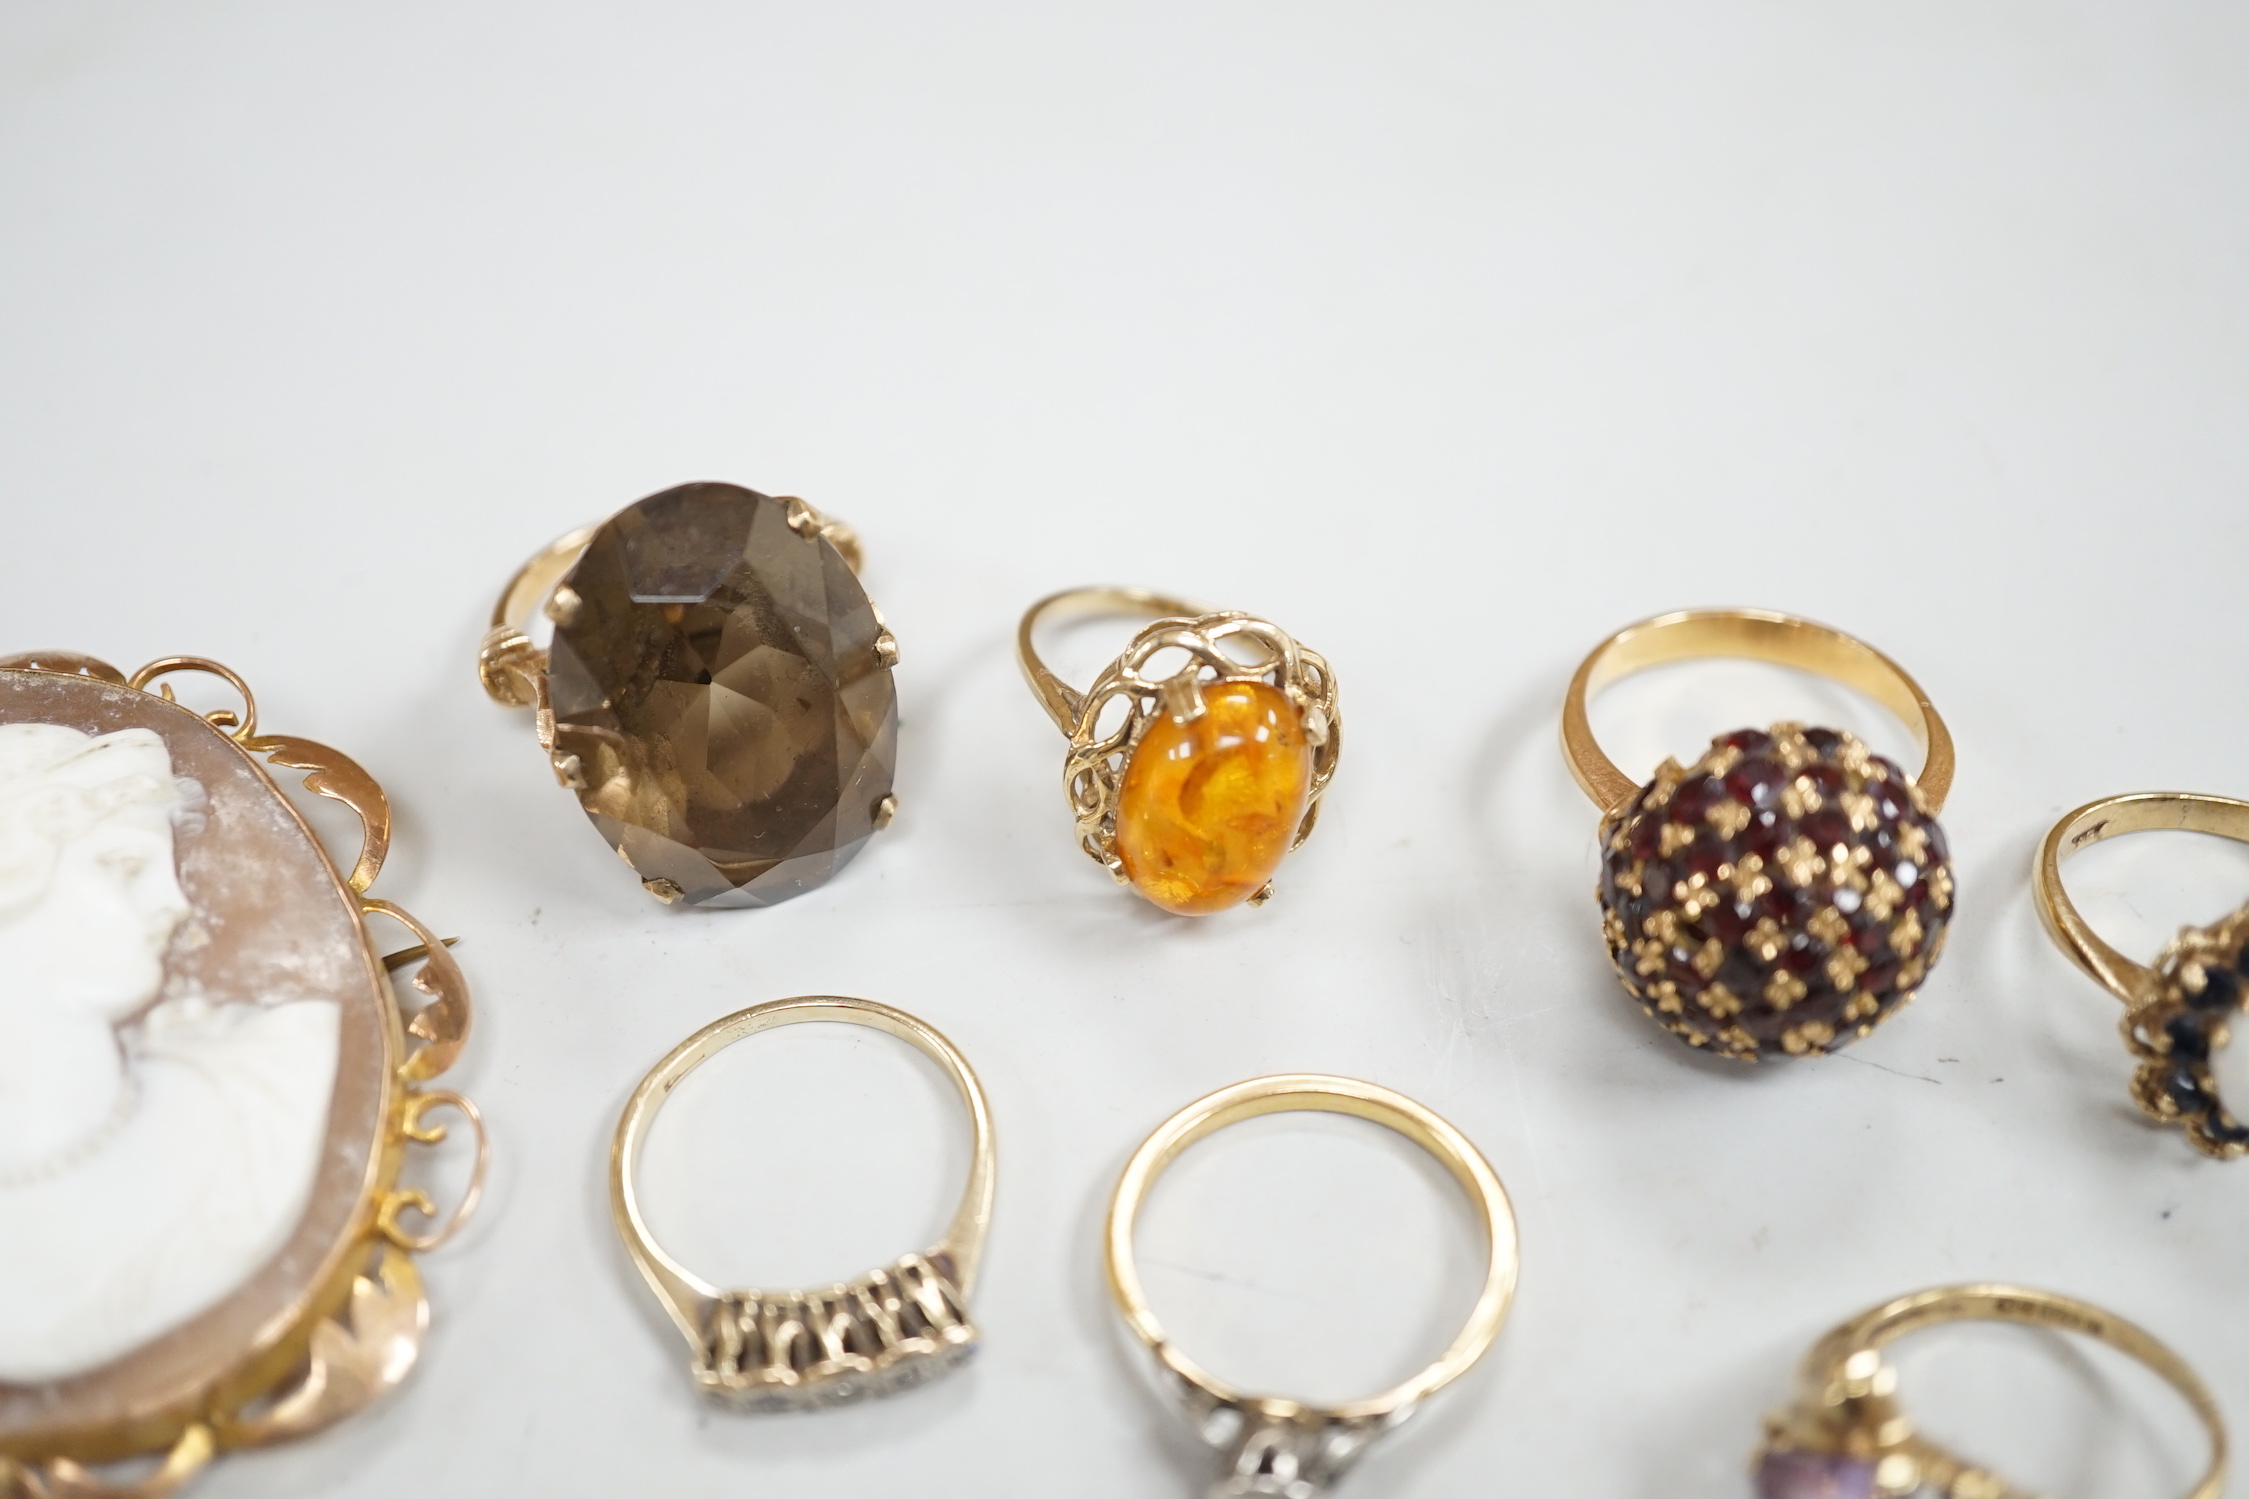 Two yellow metal and illusion set diamond rings, two 9ct gold and gem set rings, two yellow metal and gem set rings and two brooches, including 9ct mounted cameo shell.